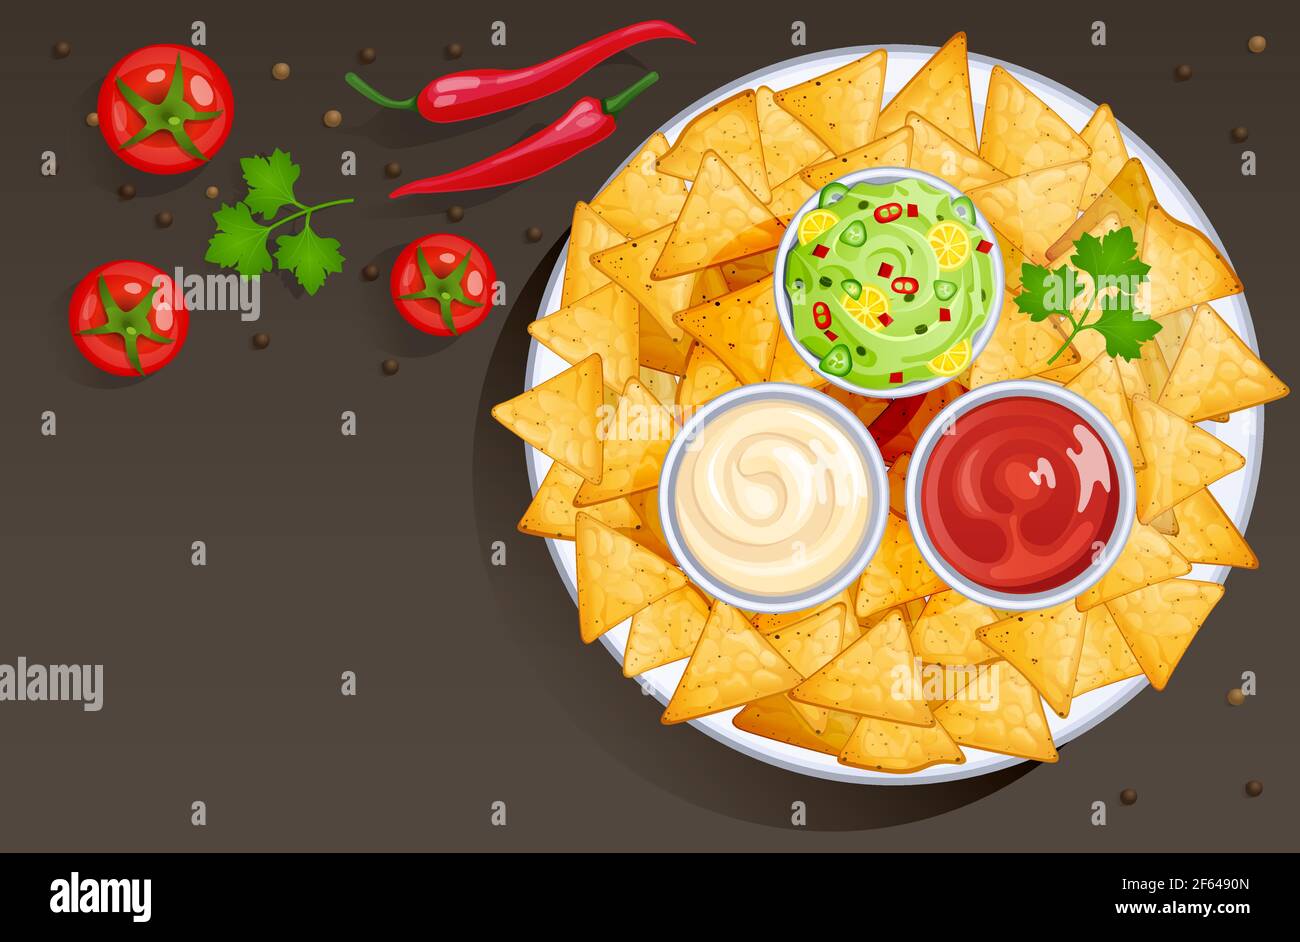 Plato con nacho y salsas en cuencos, comida mexicana con aderezos. Vector  de dibujos animados de fondo con tortilla de maíz triangulo chips en placa  con salsa, ketchup, mayonesa y guacamole Imagen